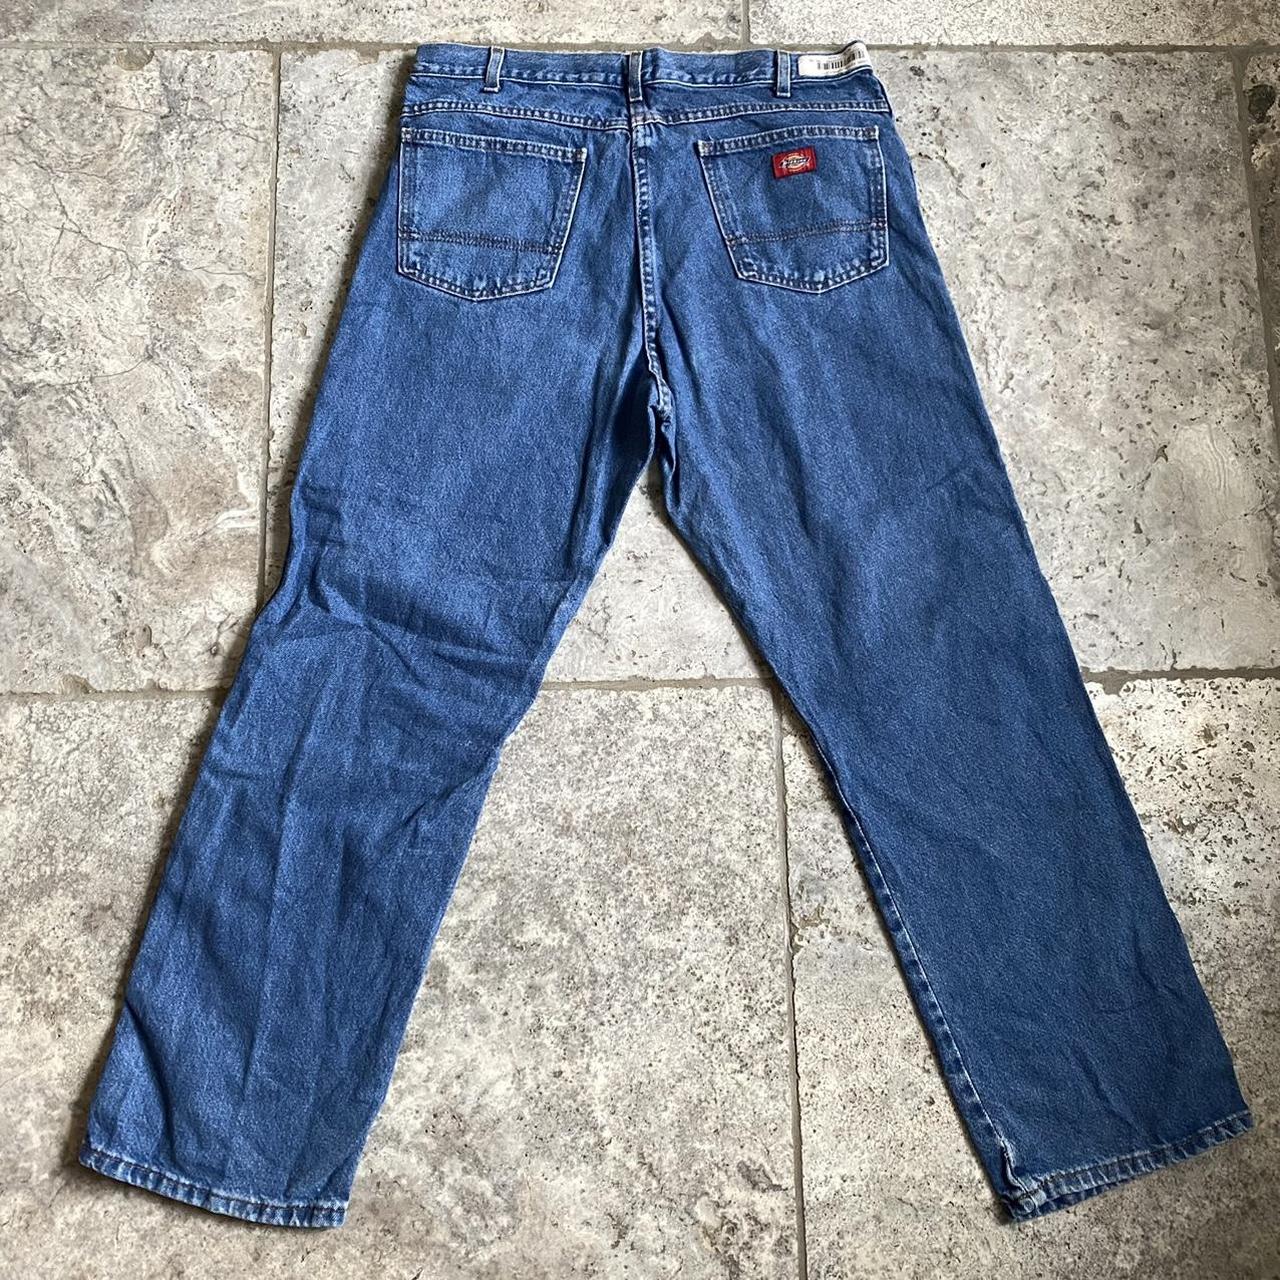 Dickies jeans 34x30